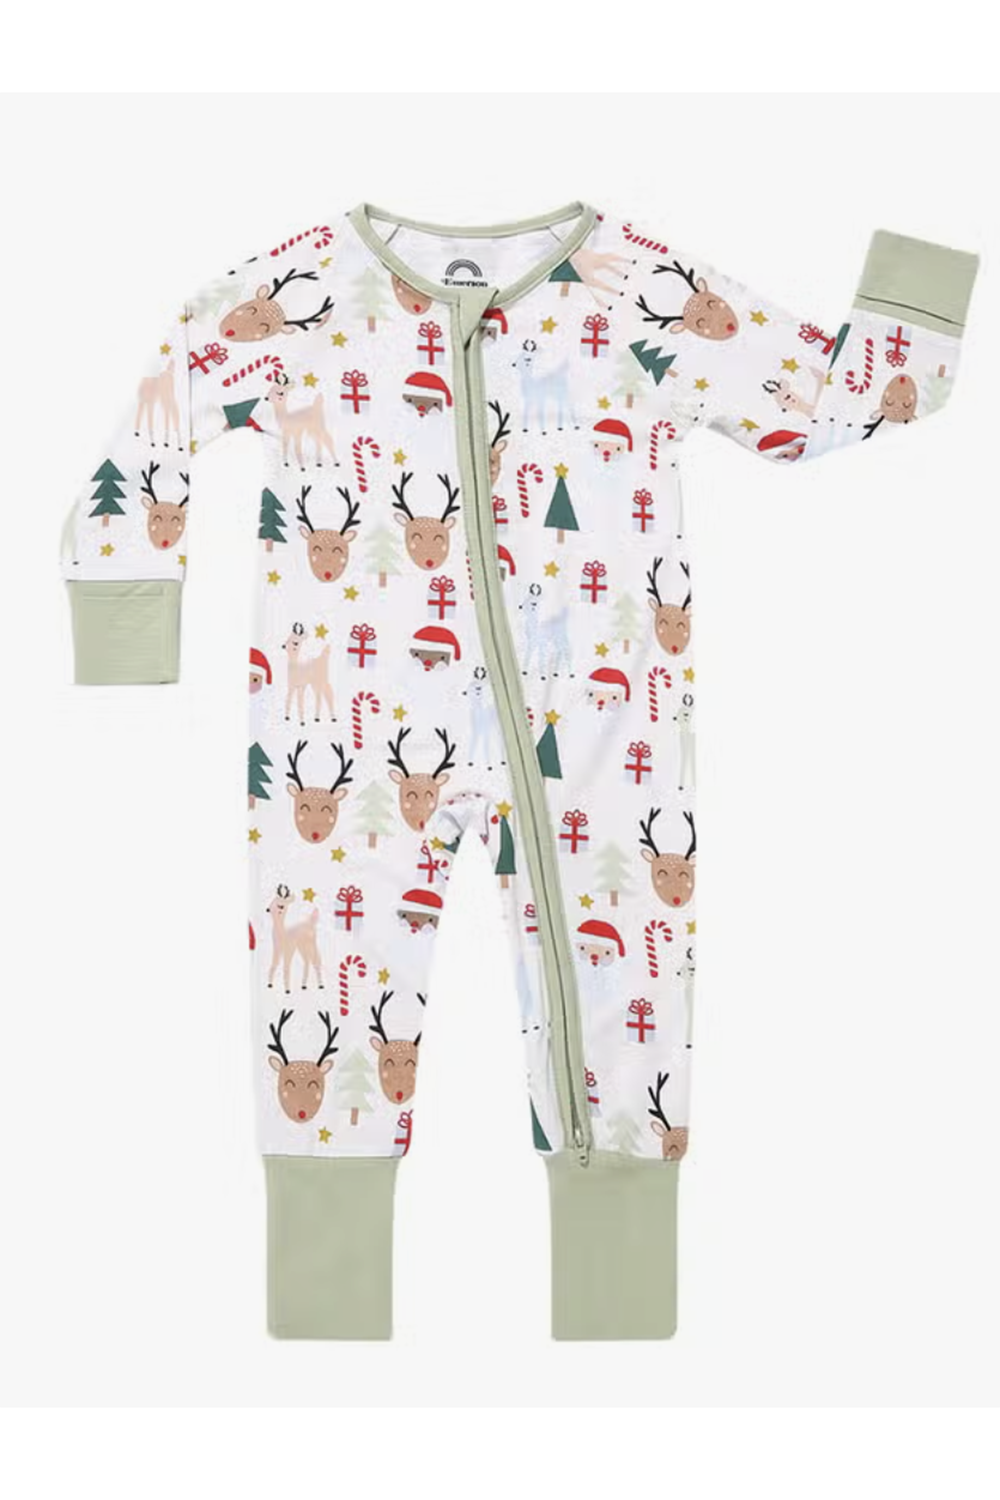 Bamboo Sleeper Pajamas - Santa and Friends